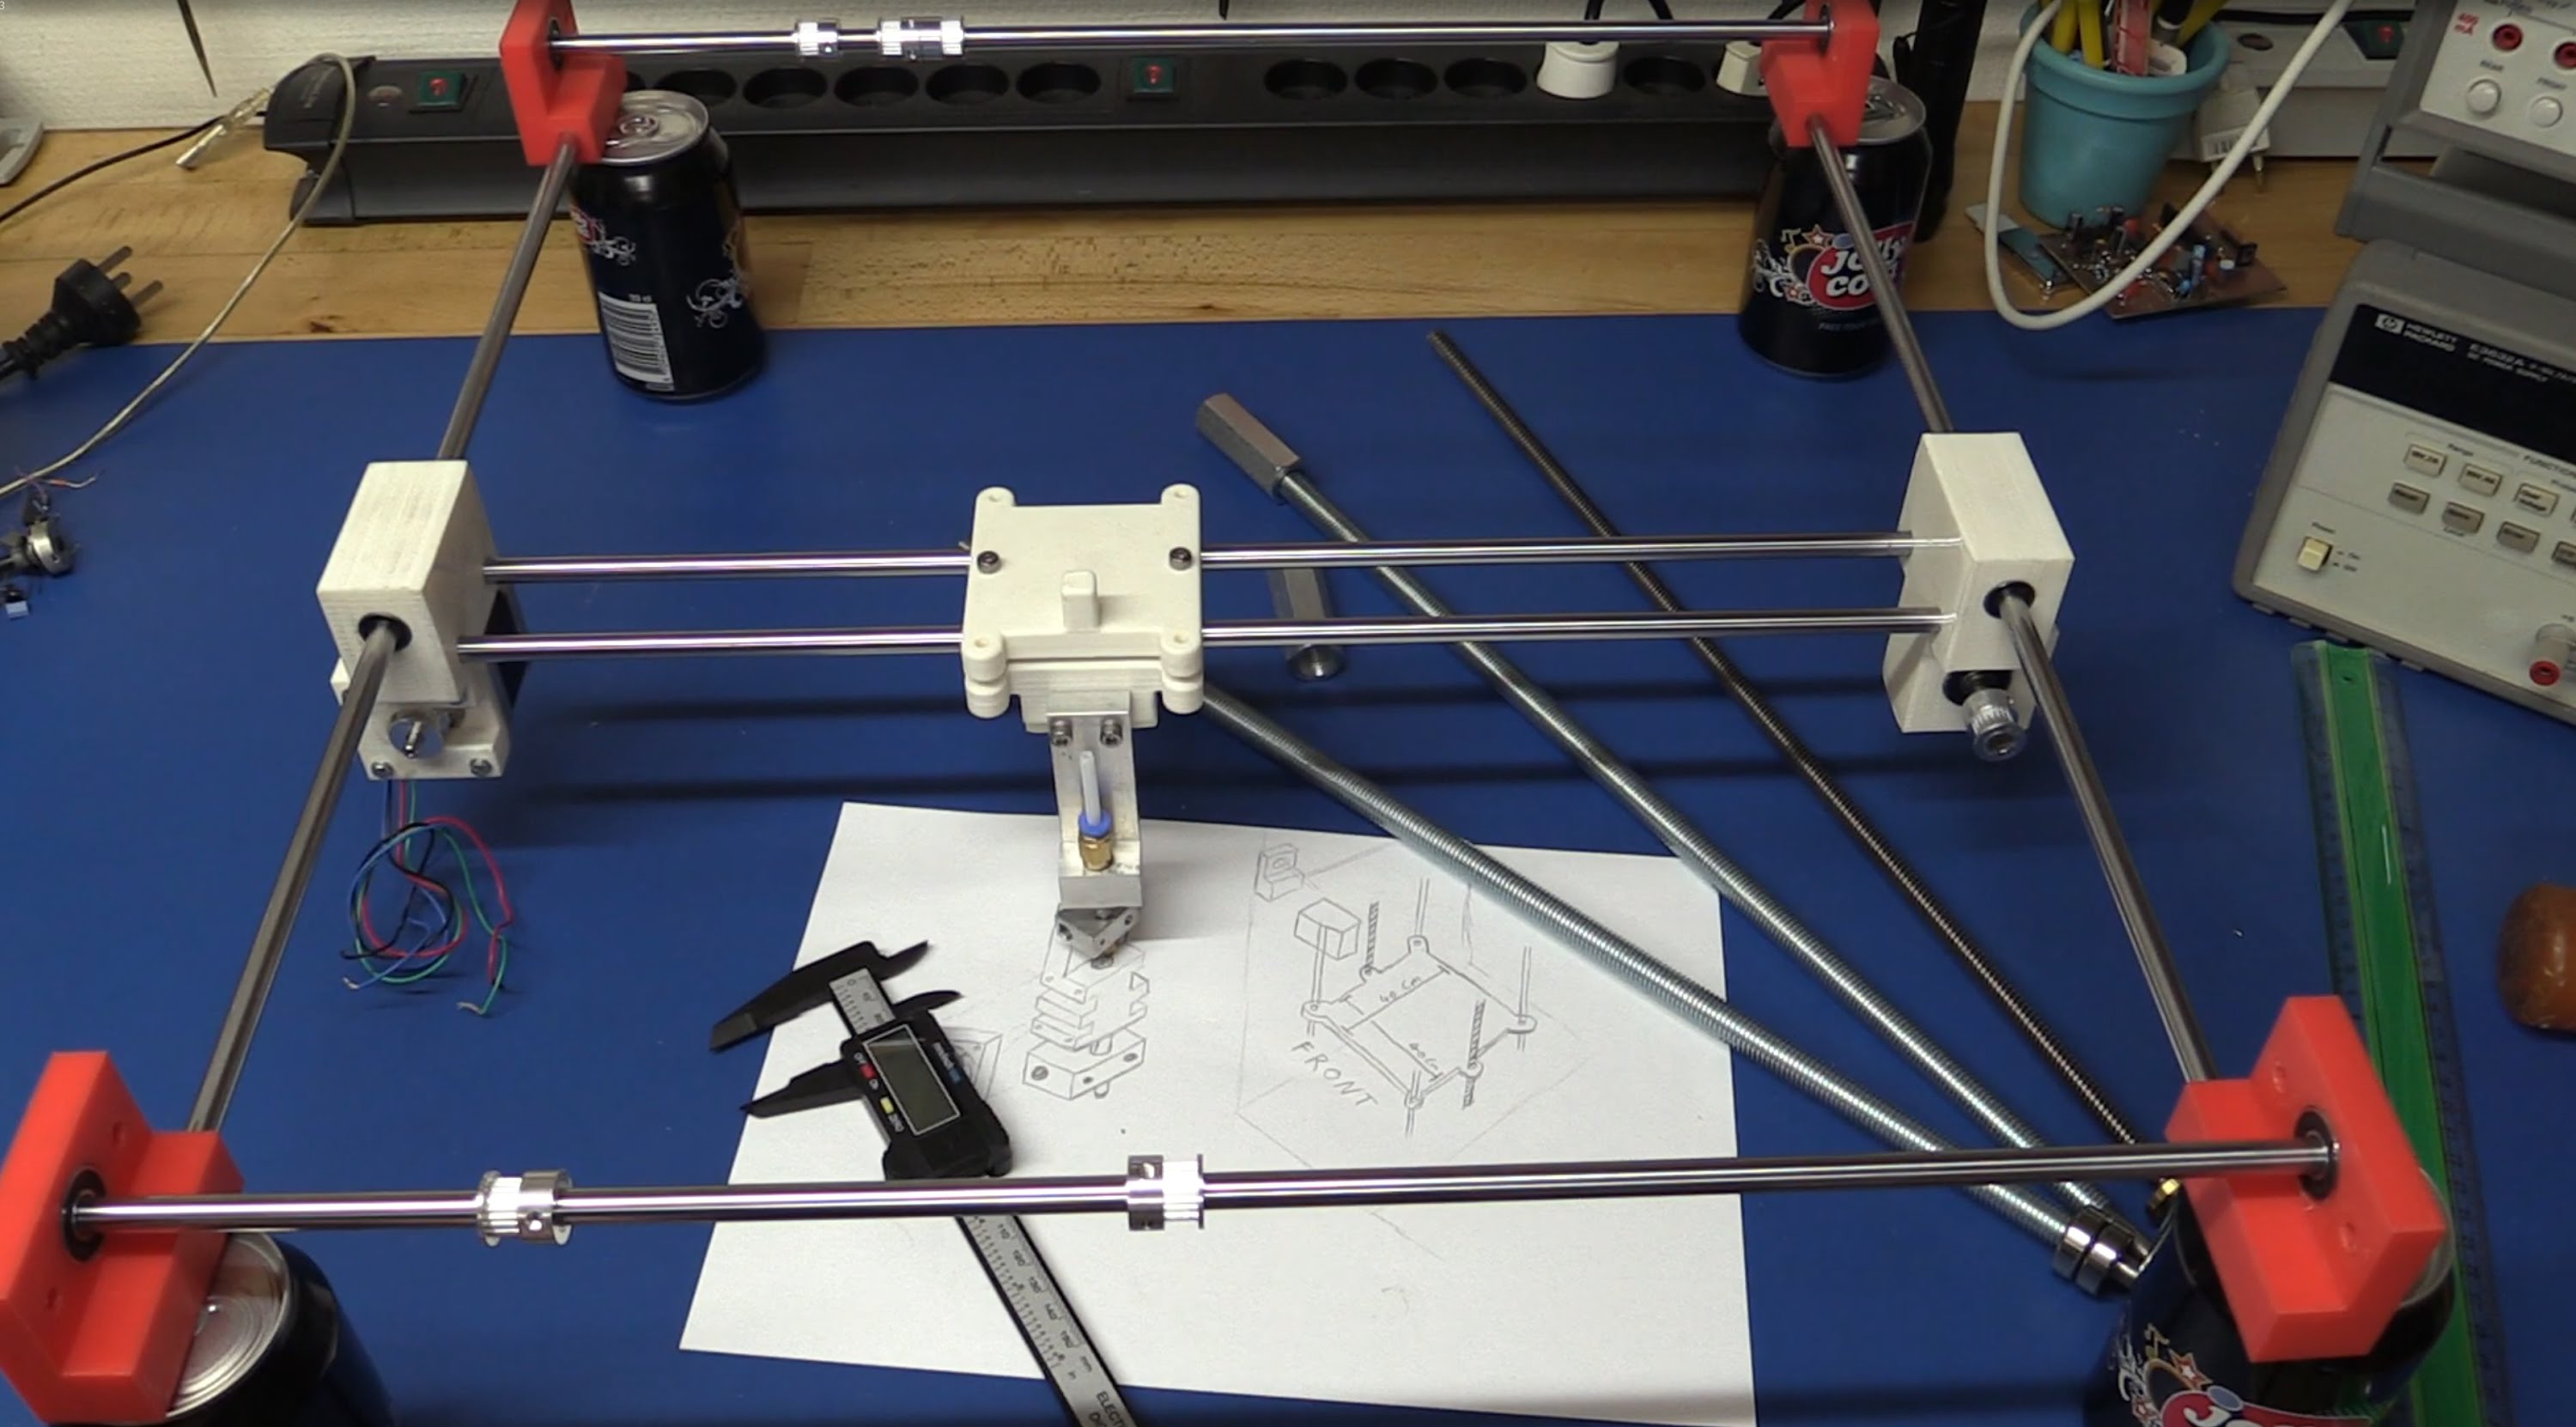 diy 3dprinter Một máy in 3D ( tự chế) đang trong quá trình lắp ráp